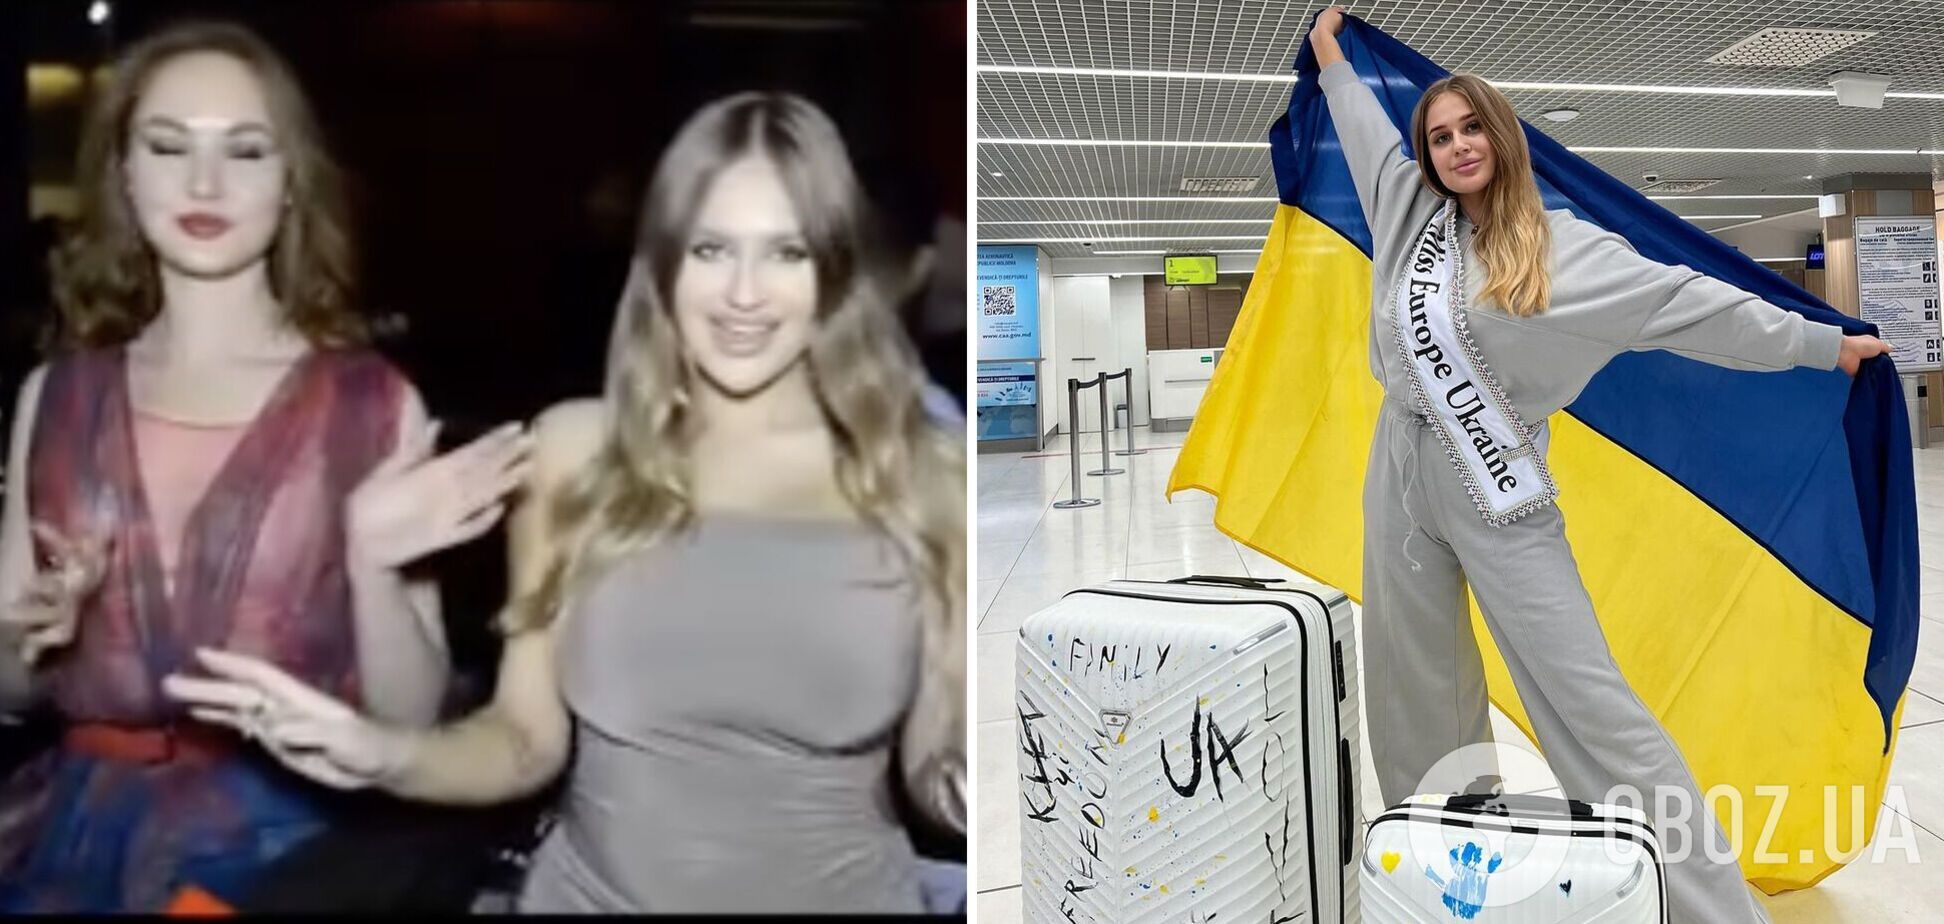 Россиянка влезла в кадр специально? Участница 'Мисс Европа' от Украины прокомментировала провокационное видео с победительницей Розой Гадиевой. Эксклюзив